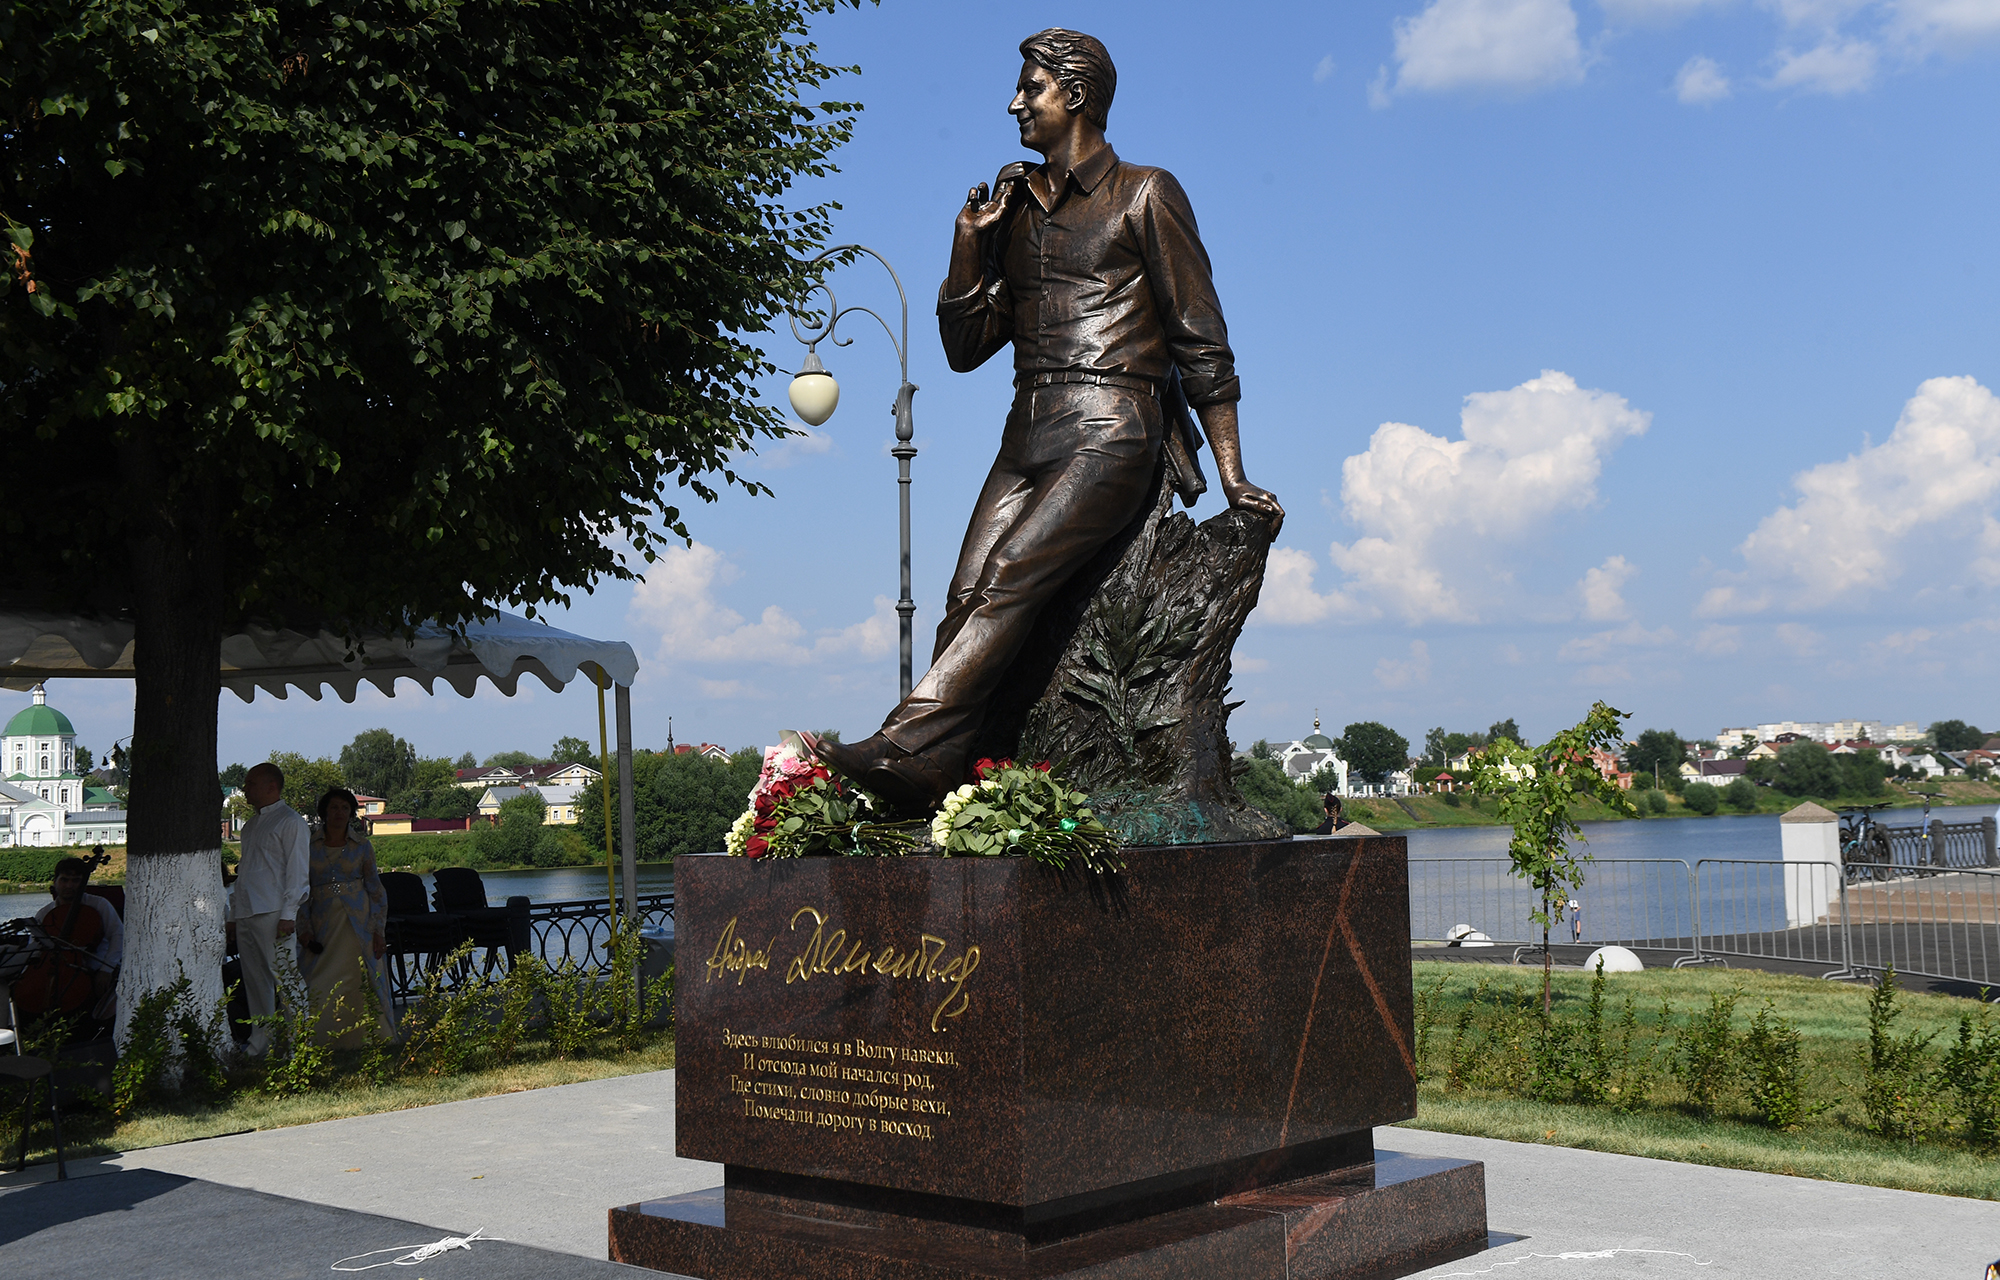 «А я без Волги просто не могу»: в Твери открыли памятник знаменитому поэту Андрею Дементьеву